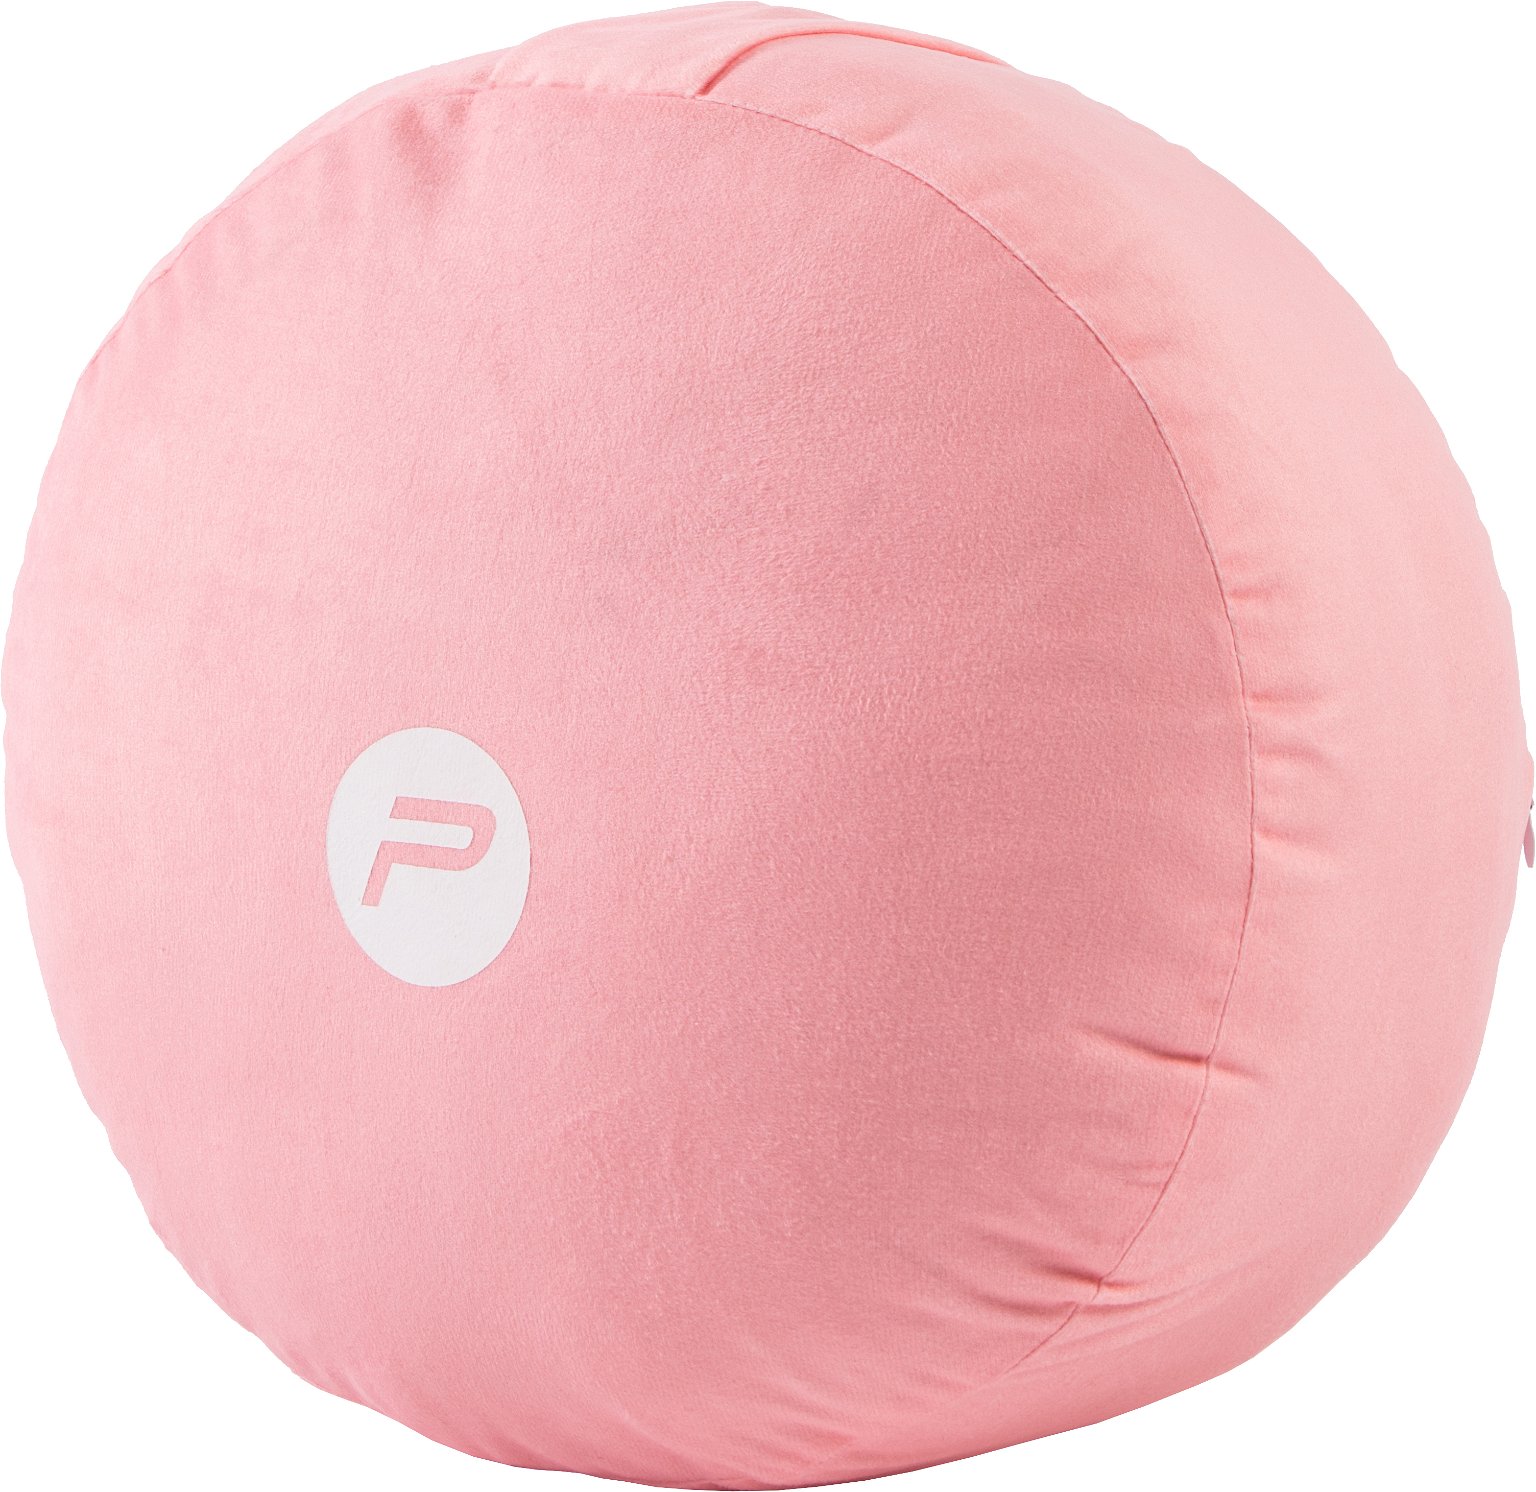 Jogos priedas Pure2Improve Meditation Pillow P2I201590, 33 cm, 0.0006 kg